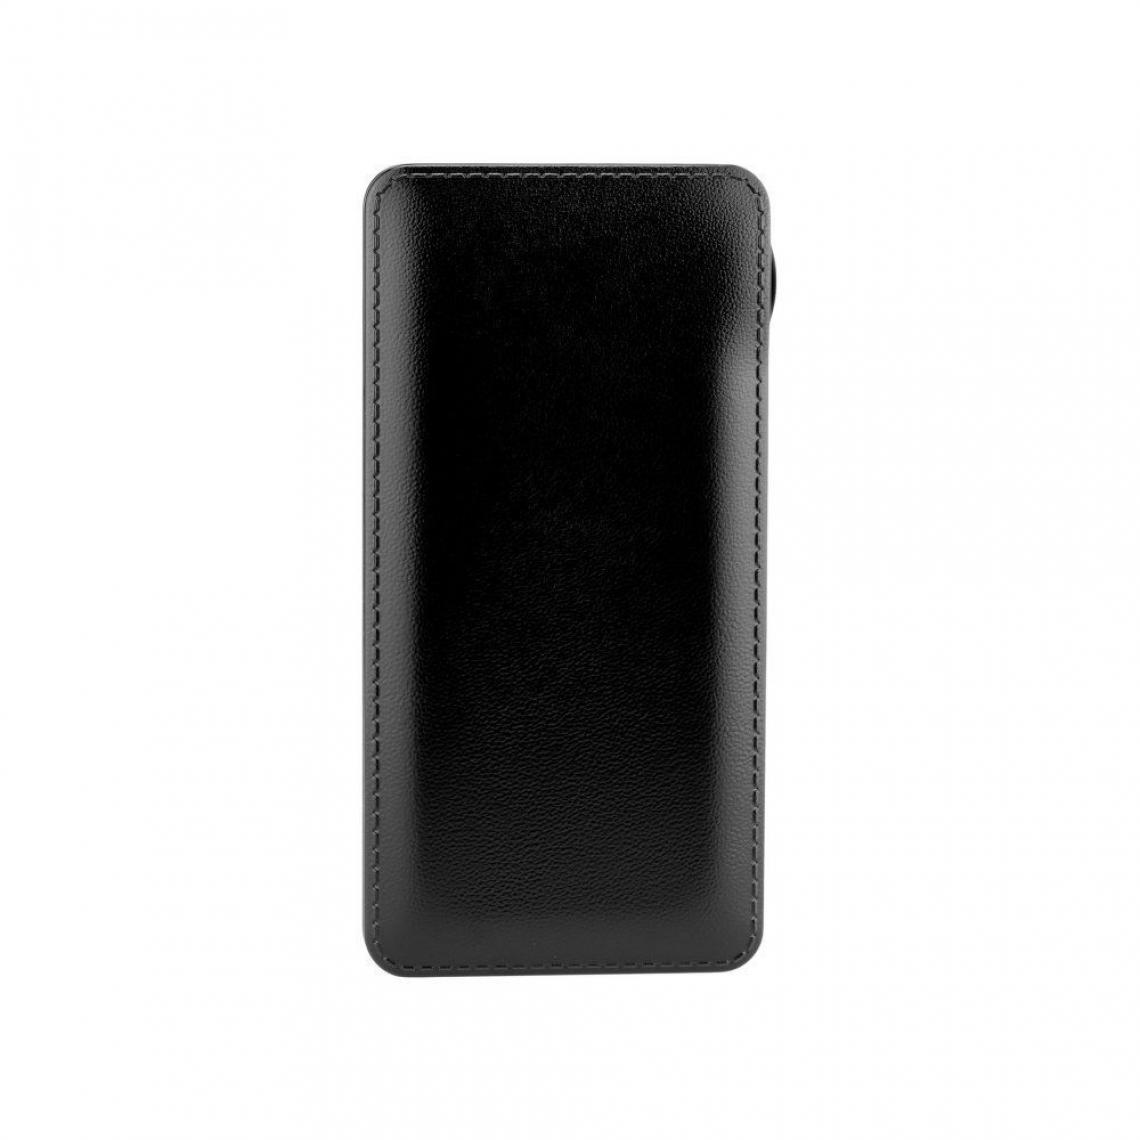 Ozzzo - Chargeur batterie externe 20000 mAh powerbank ozzzo noir pour HTC Desire 10 Lifestyle - Autres accessoires smartphone